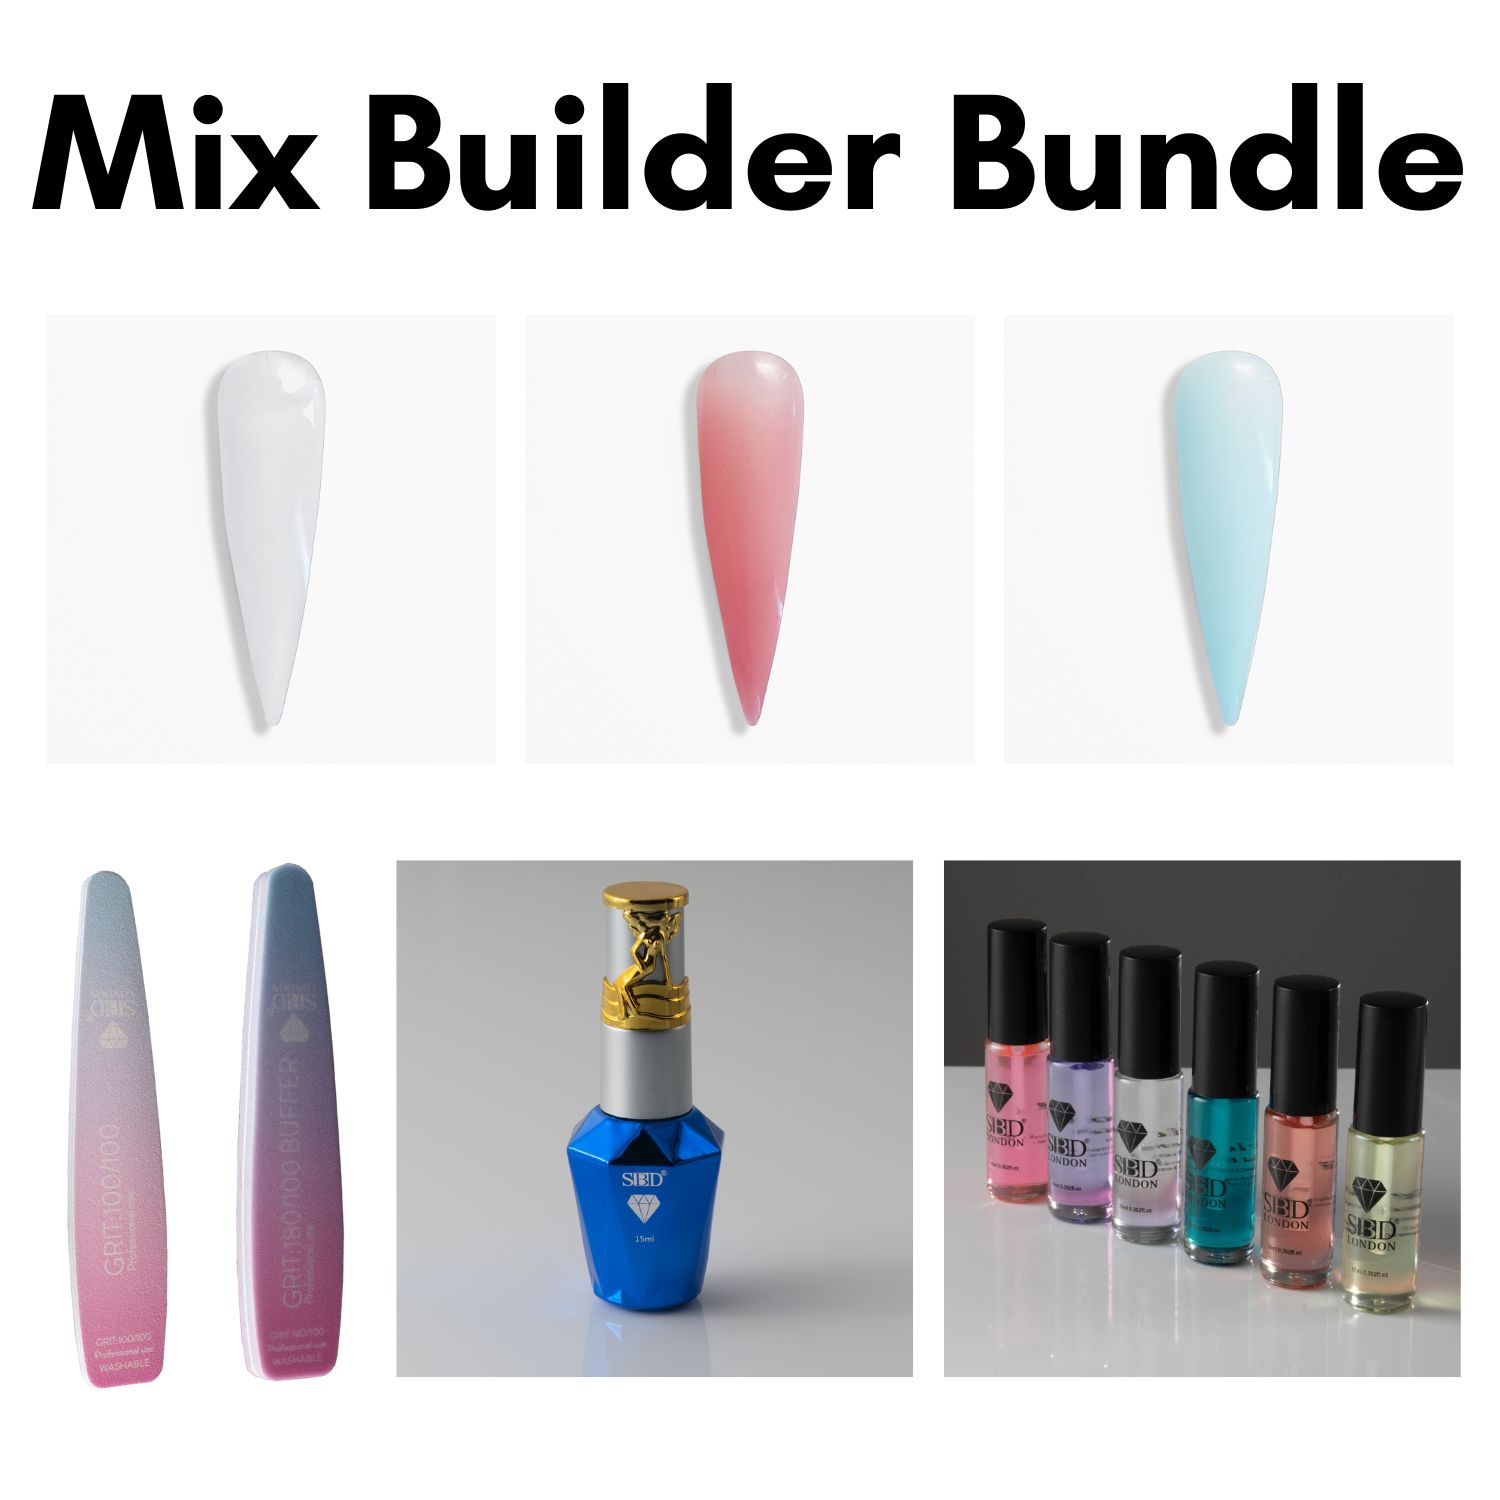 Mix Builder Bundle